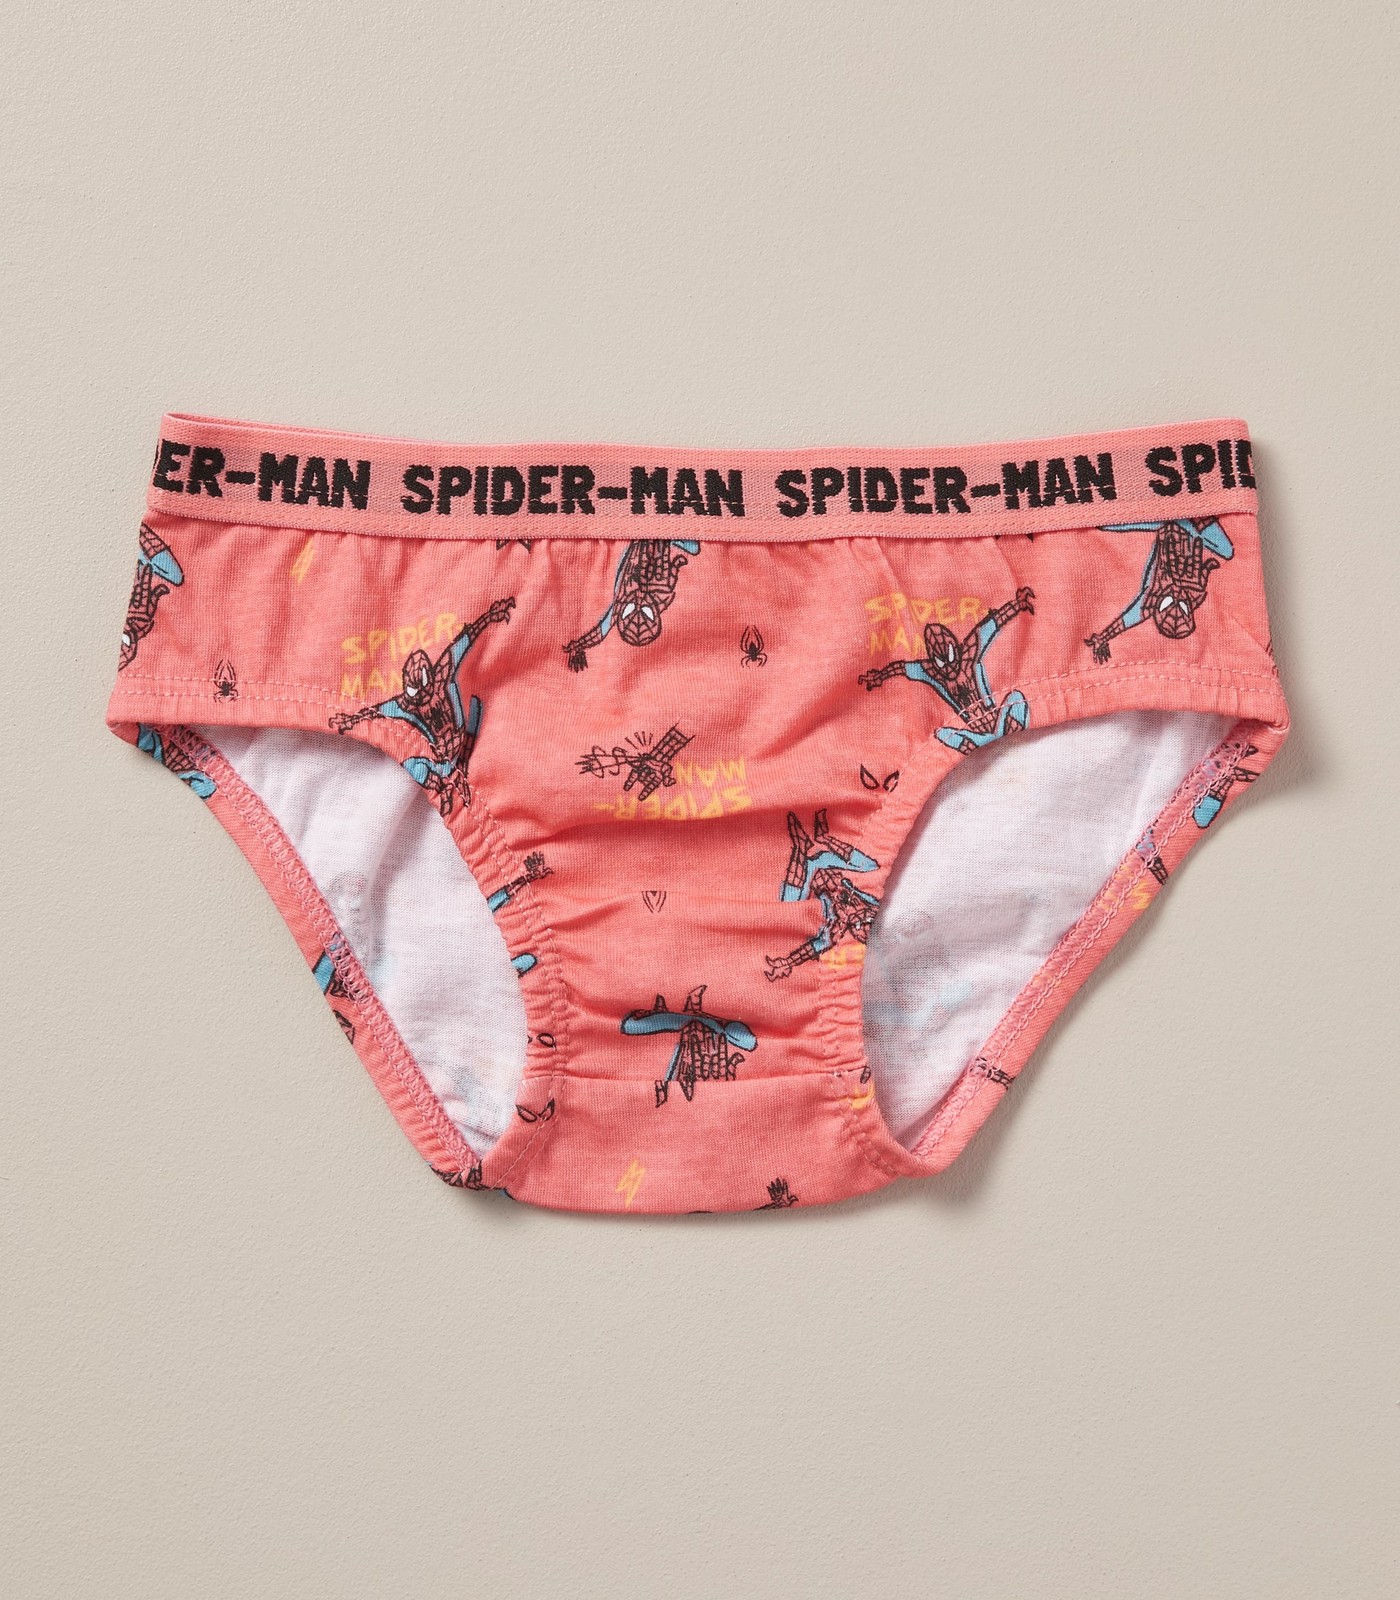 Womens Spider-Man Underwear